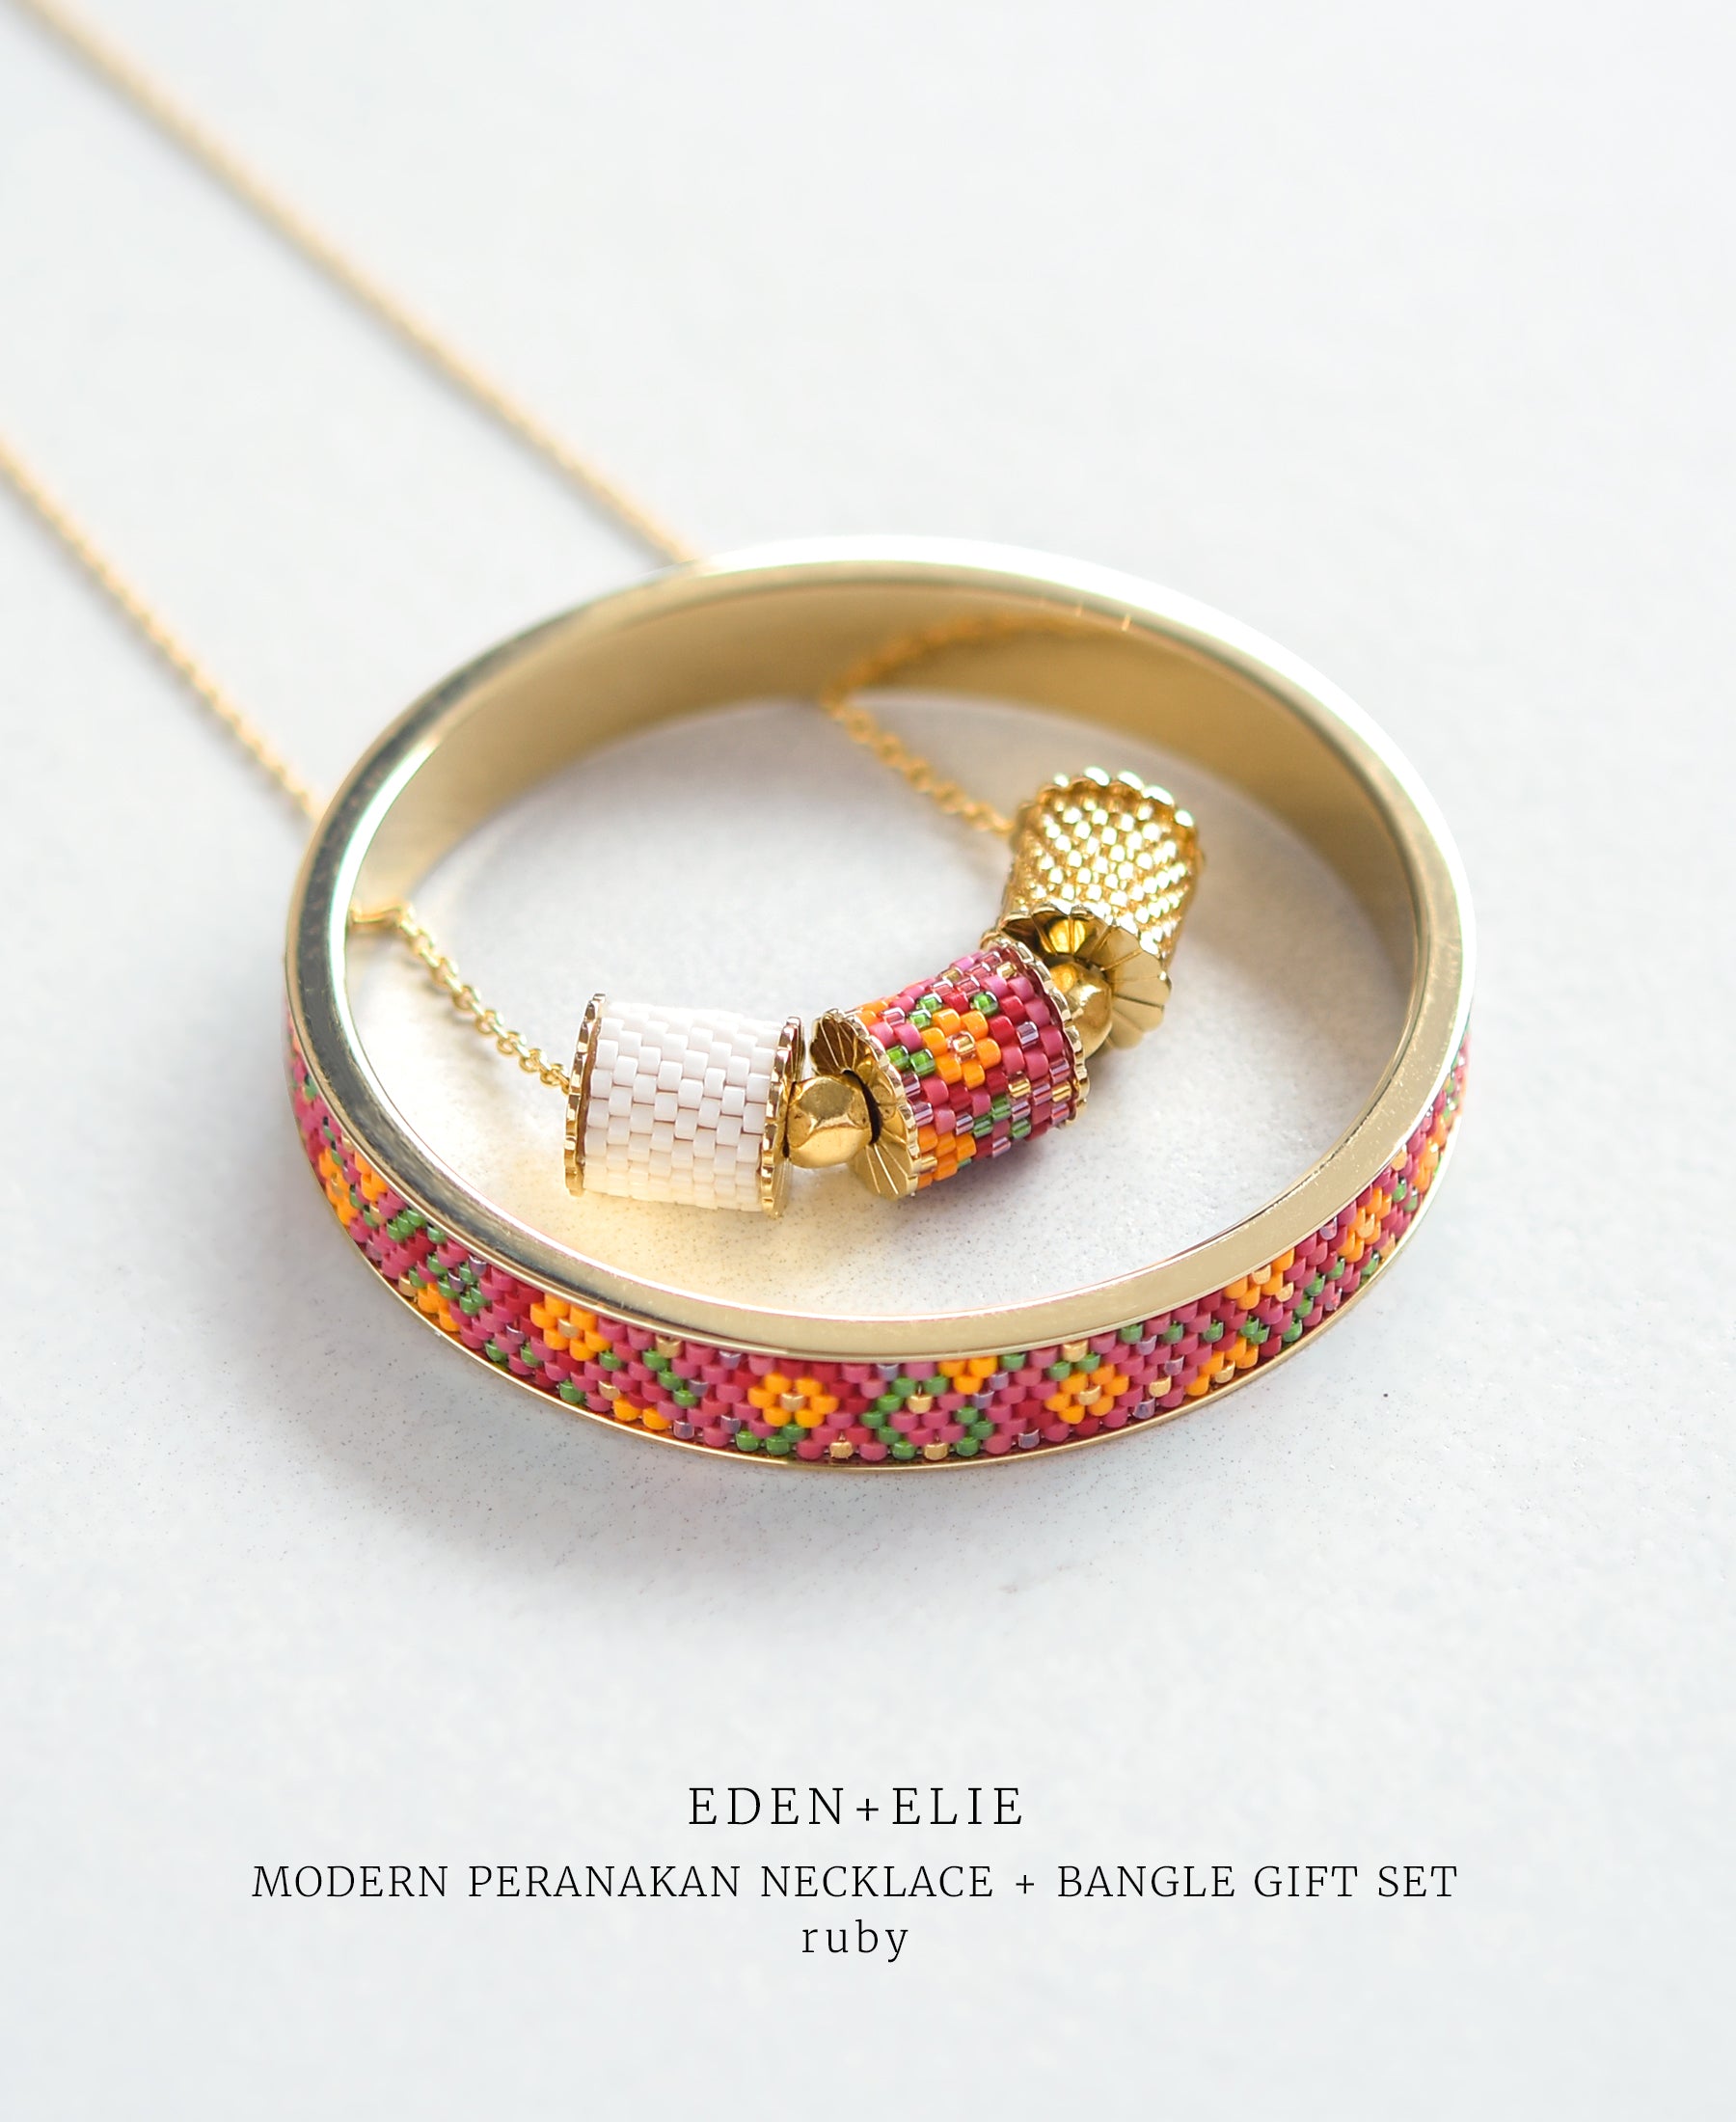 EDEN + ELIE Modern Peranakan adjustable length necklace + bangle gift set - ruby